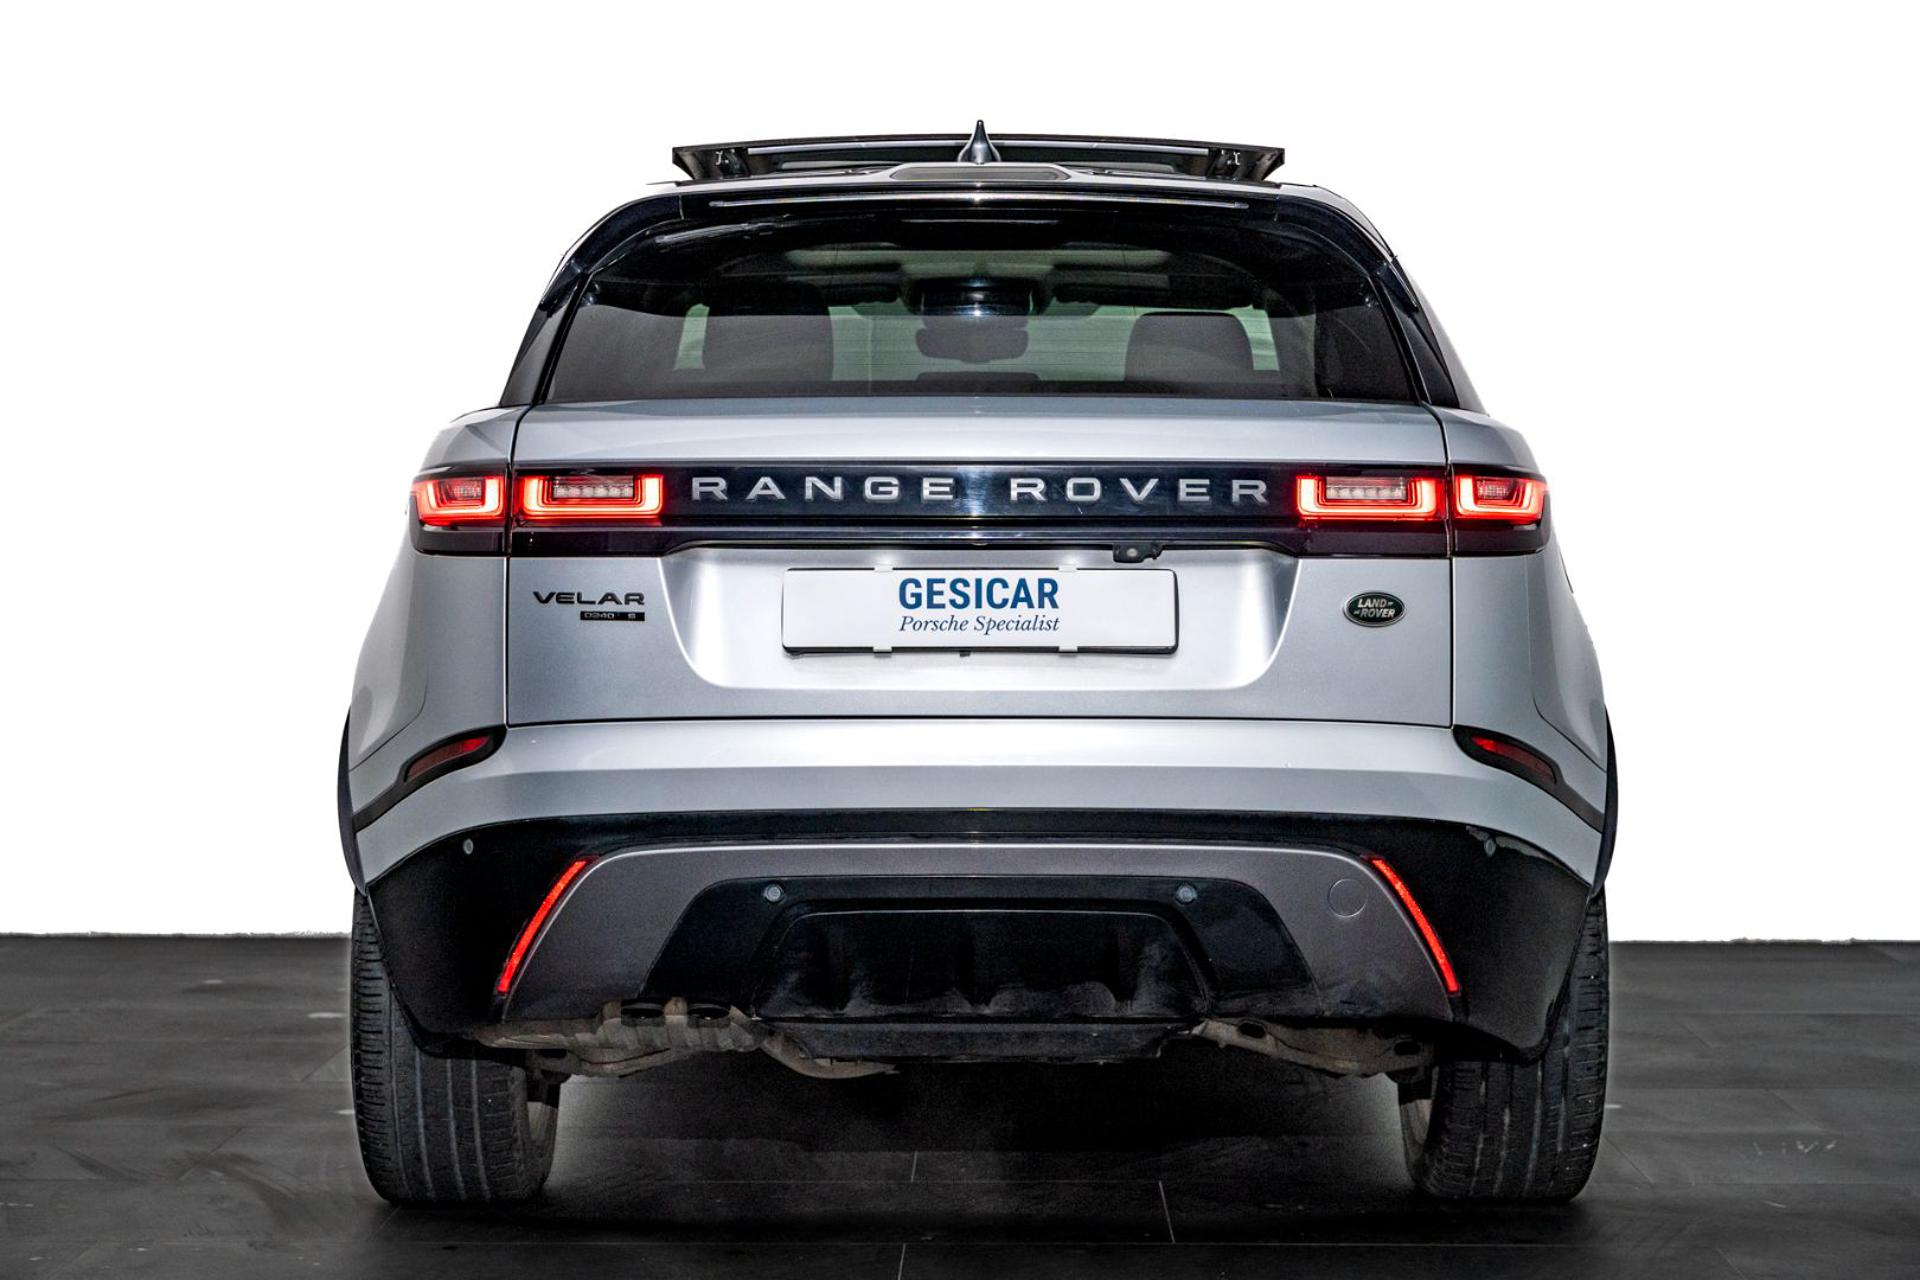 LAND ROVER Range Rover Velar - Concessionaria Gesicar Livorno